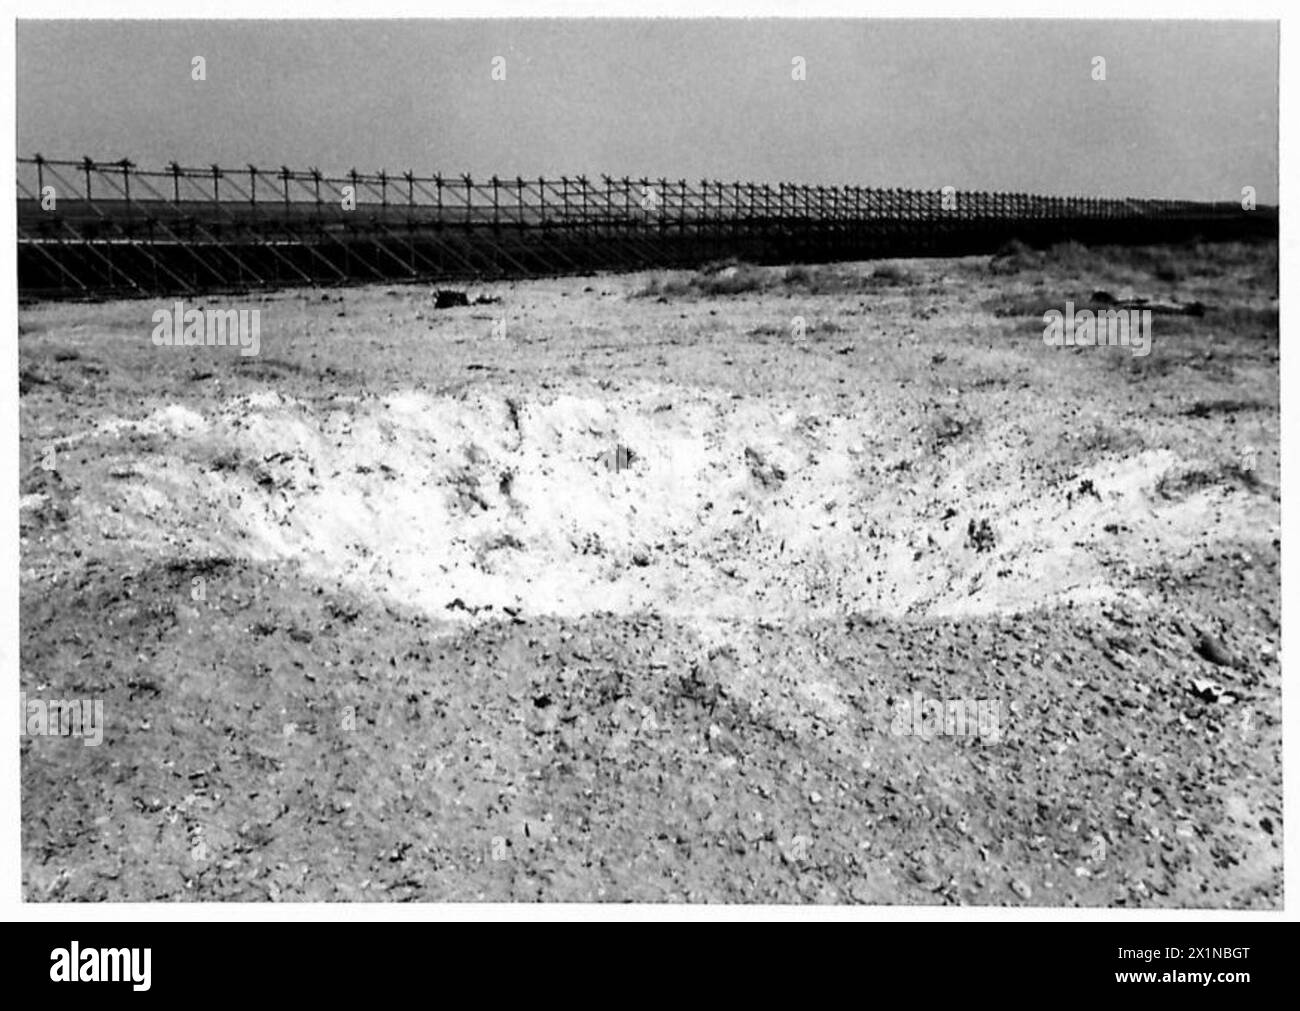 SPEZIELLE AUFGABE FÜR DIE 79. GEPANZERTE DIVISION - Ansichten in voller Breite und Tiefe von Kratern, die von 500 lb. Bomben gemacht wurden. Sicherung Nase – 1 Sek. Hecksicherung - keine Verzögerung, britische Armee Stockfoto